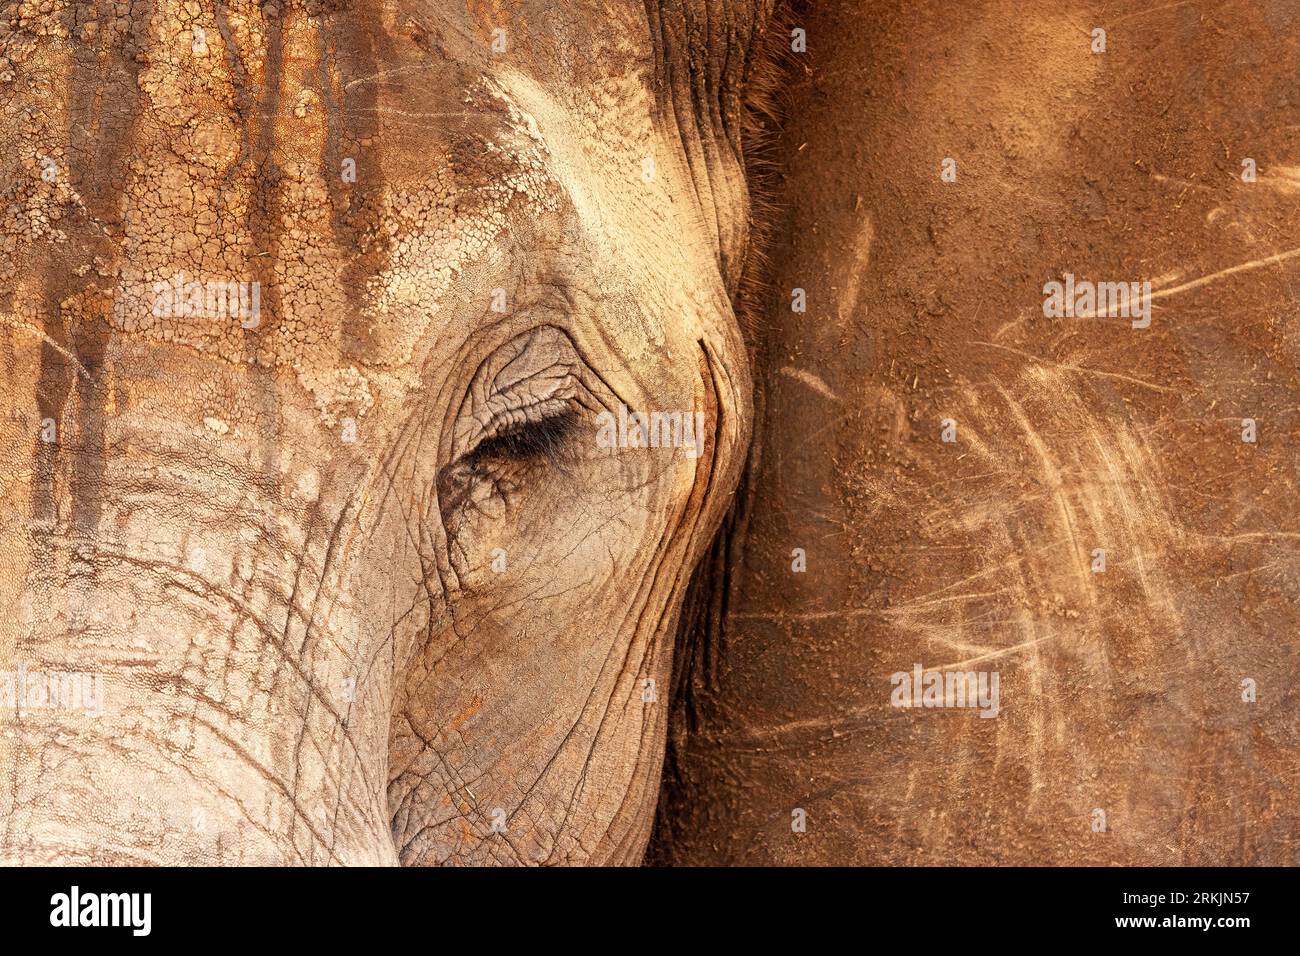 Elefante africano (Loxodonta africana), dettaglio della testa, Parco Nazionale dello Tsavo, Kenya, Africa Foto Stock